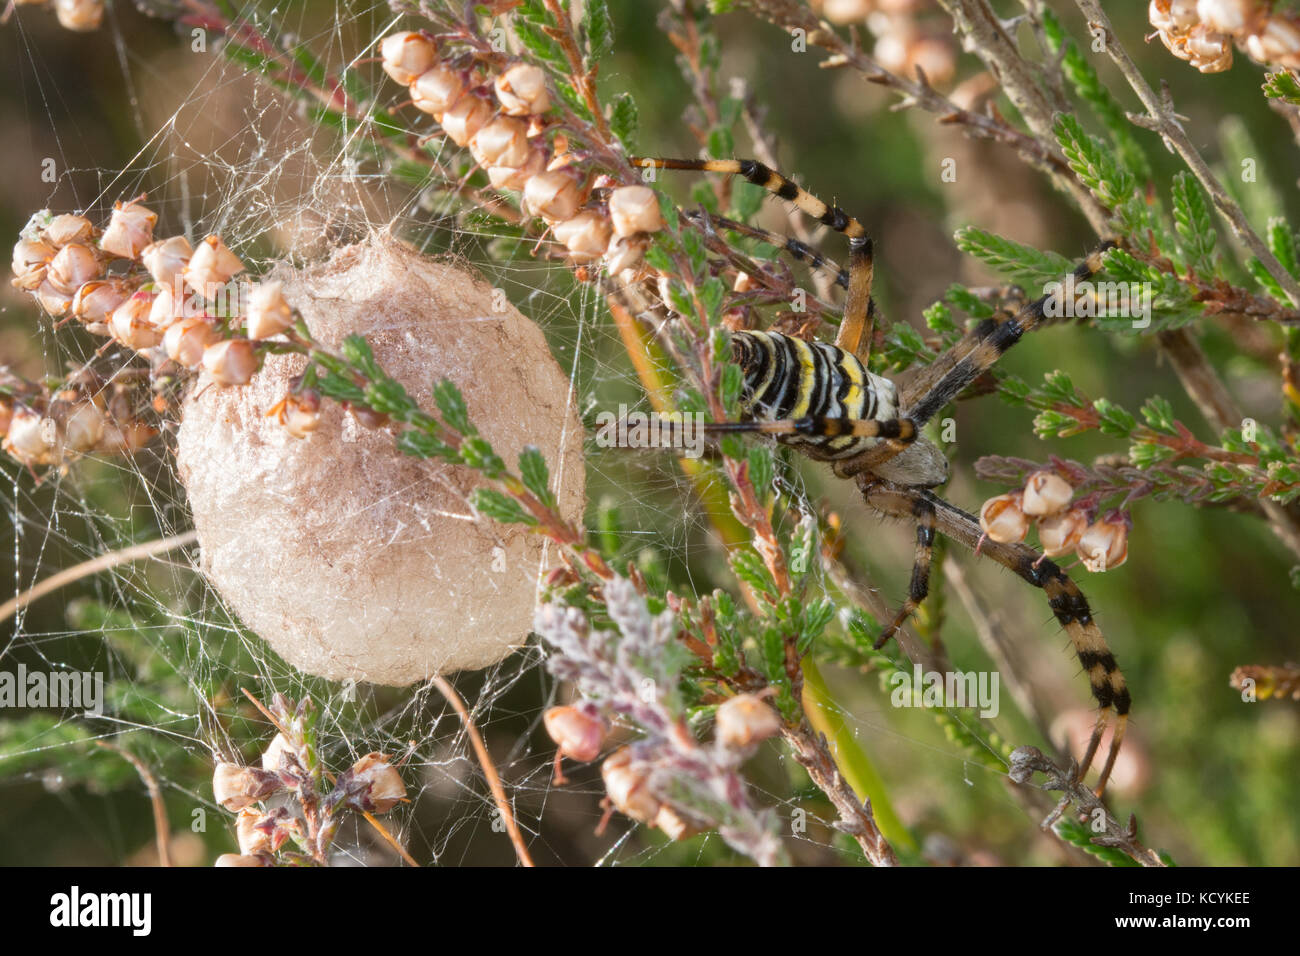 Araignée de guêpe femelle (Argiope bruennichi) qui garde son sac d'œufs, Royaume-Uni Banque D'Images